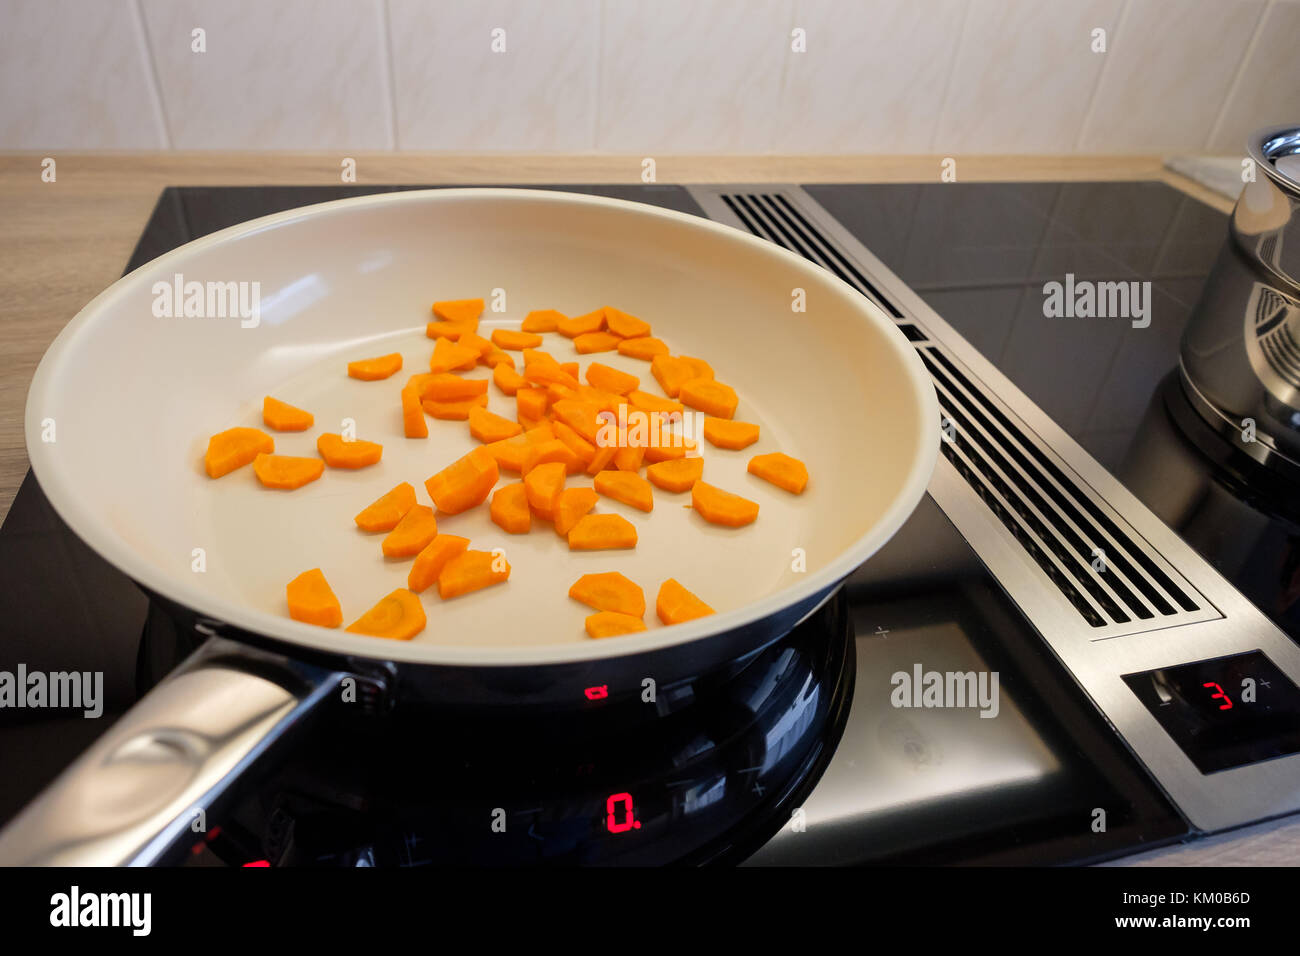 Les carottes dans une casserole sur une cuisinière à induction en vue de côté Banque D'Images